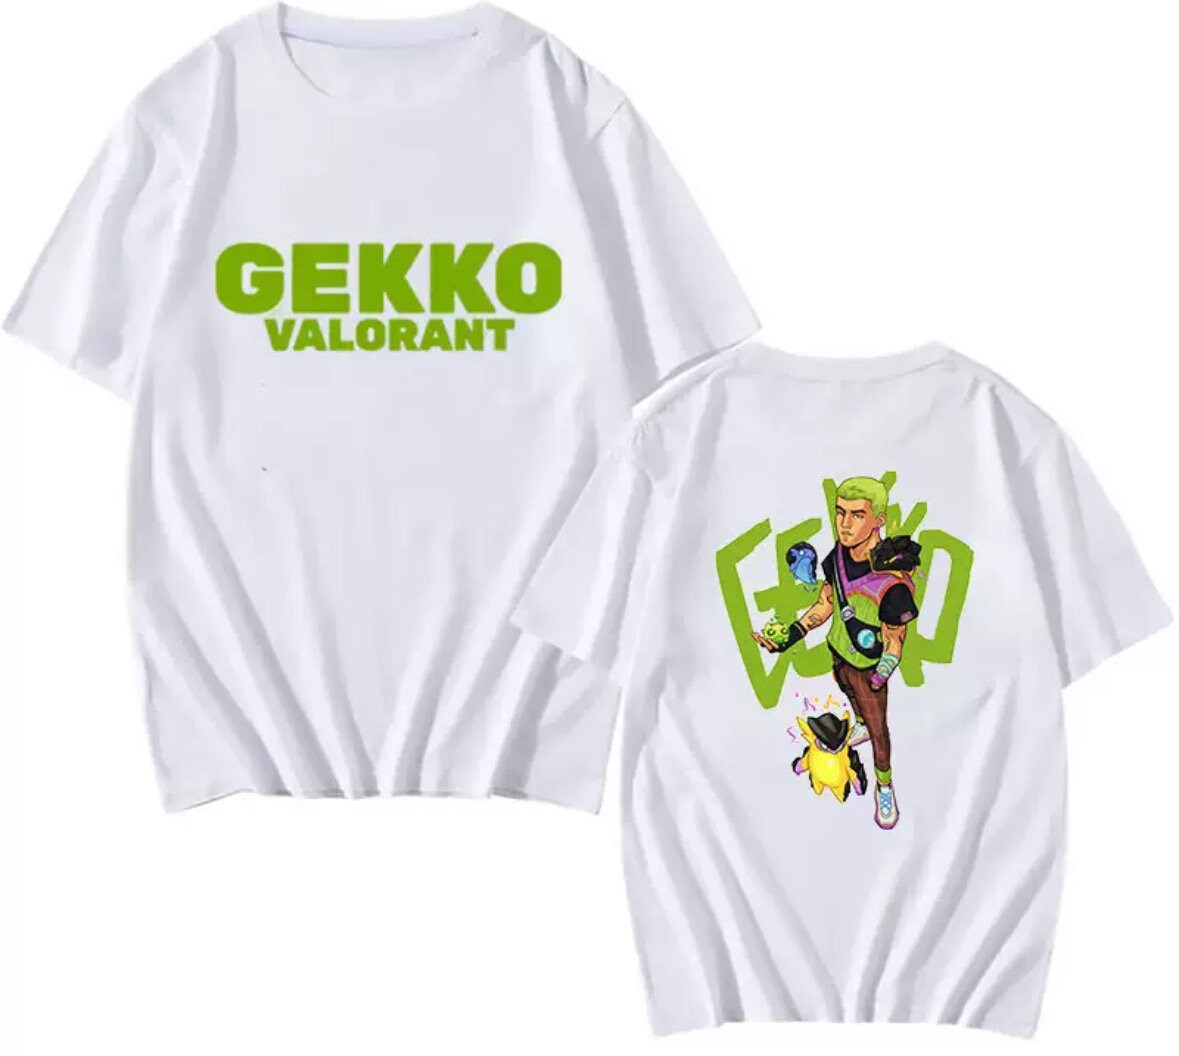 Gekko Valorant shirt